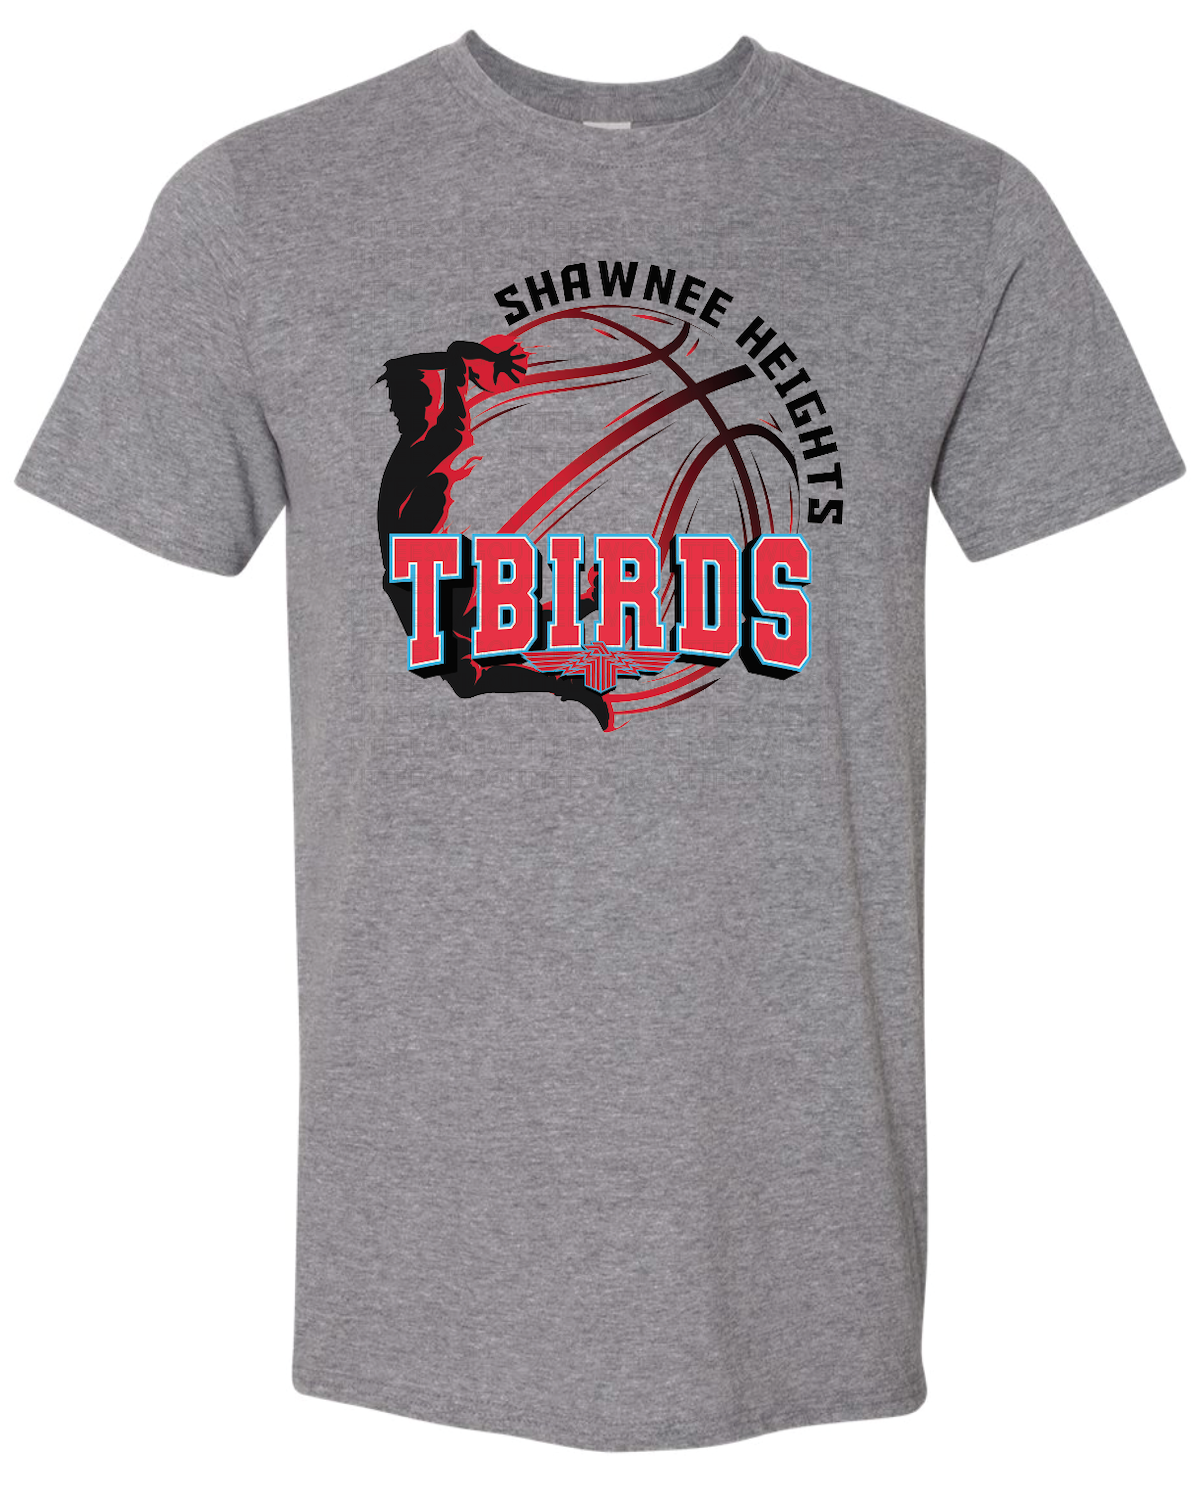 SHHS Tbirds Basketball Gildan Softstyle T-Shirt